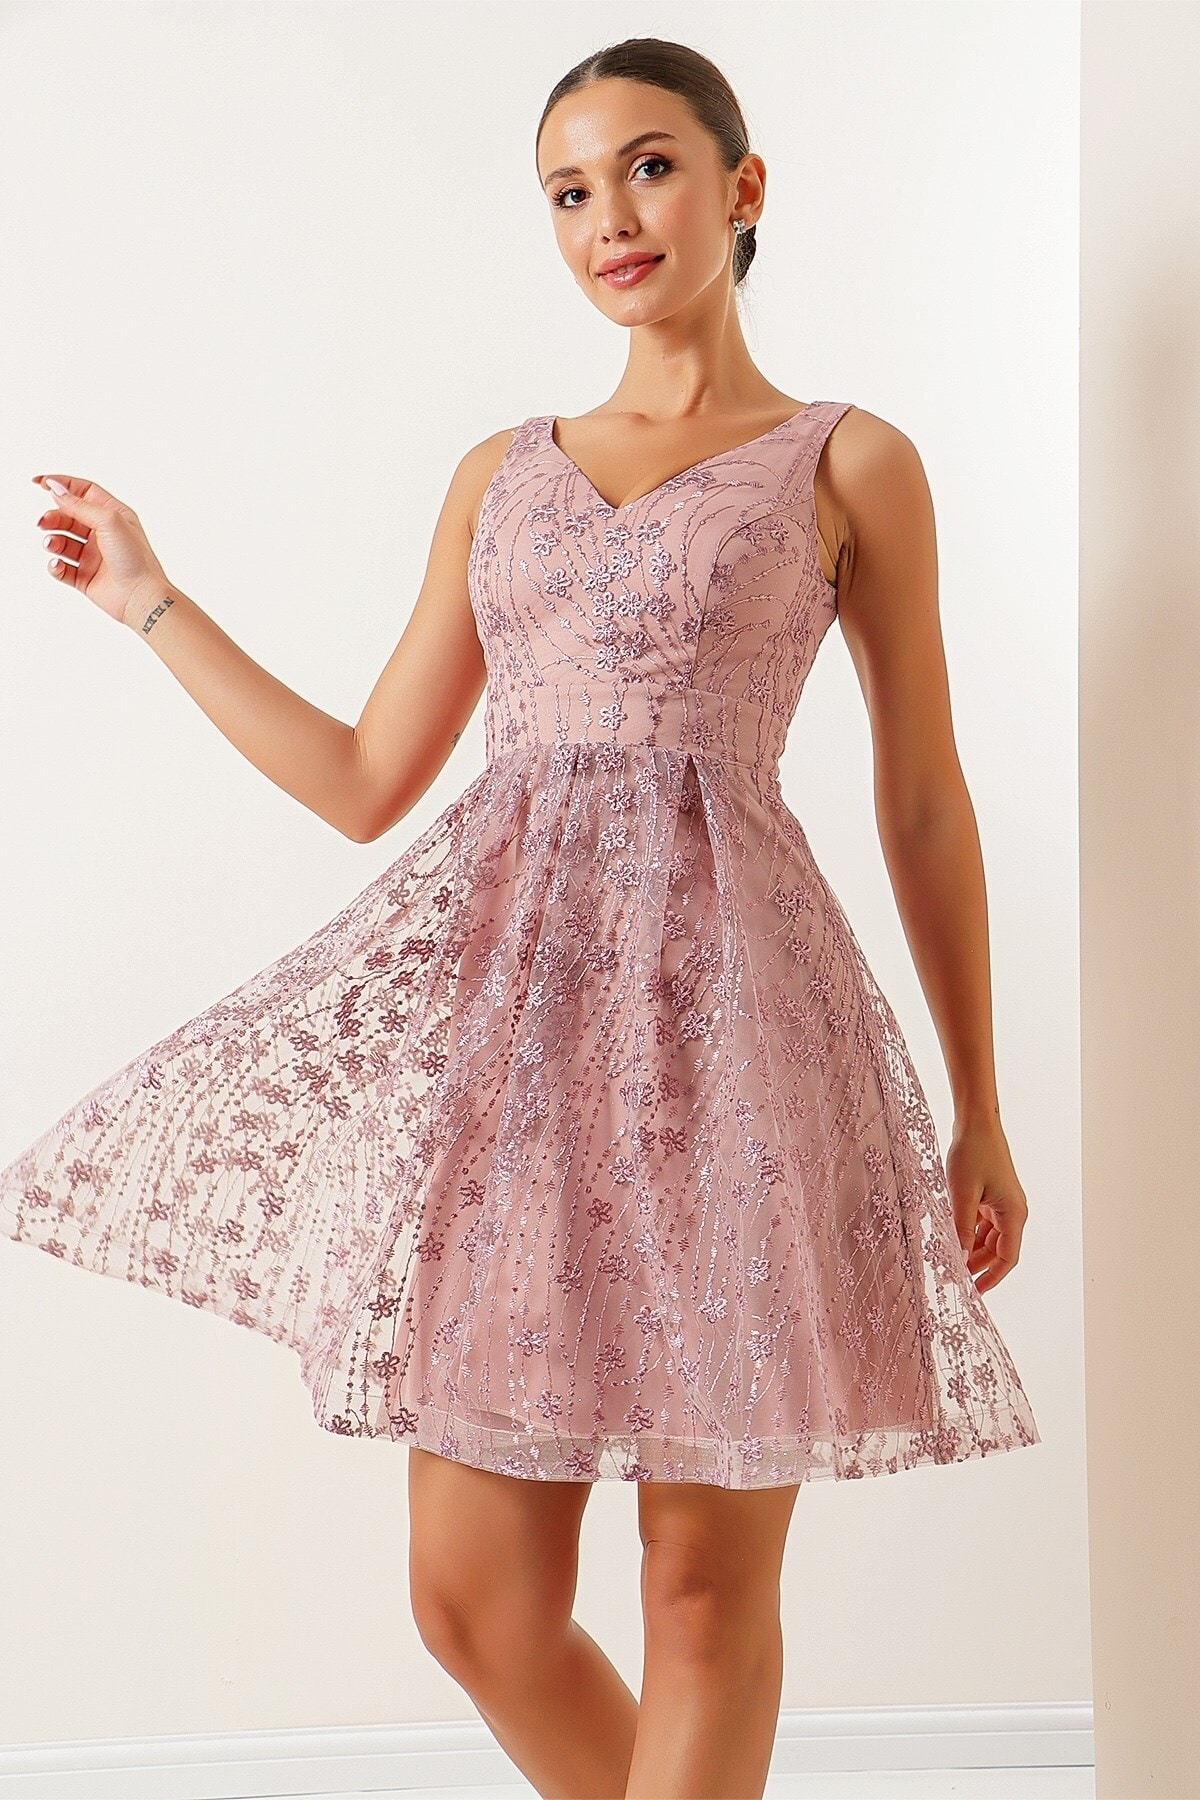 Levně By Saygı V-Neck Lined Lace Dress